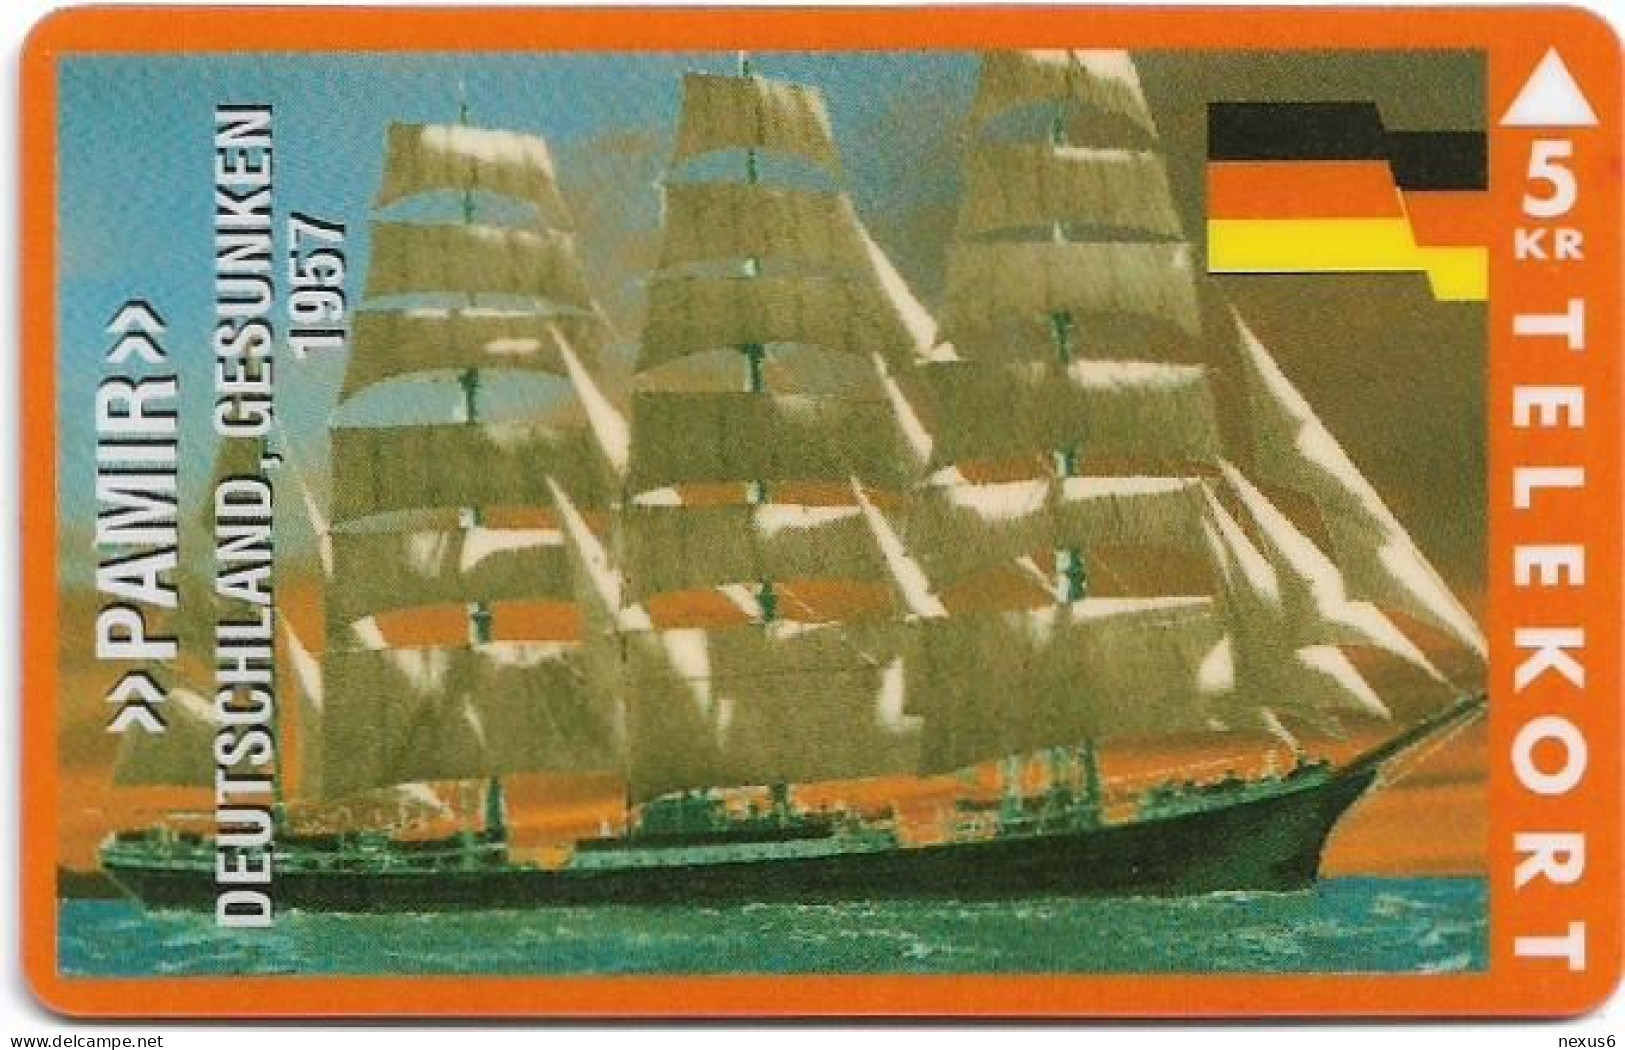 Denmark - KTAS - Ships (Red) - Germany - Pamir - TDKP136 - 03.1995, 5kr, 1.500ex, Used - Dänemark